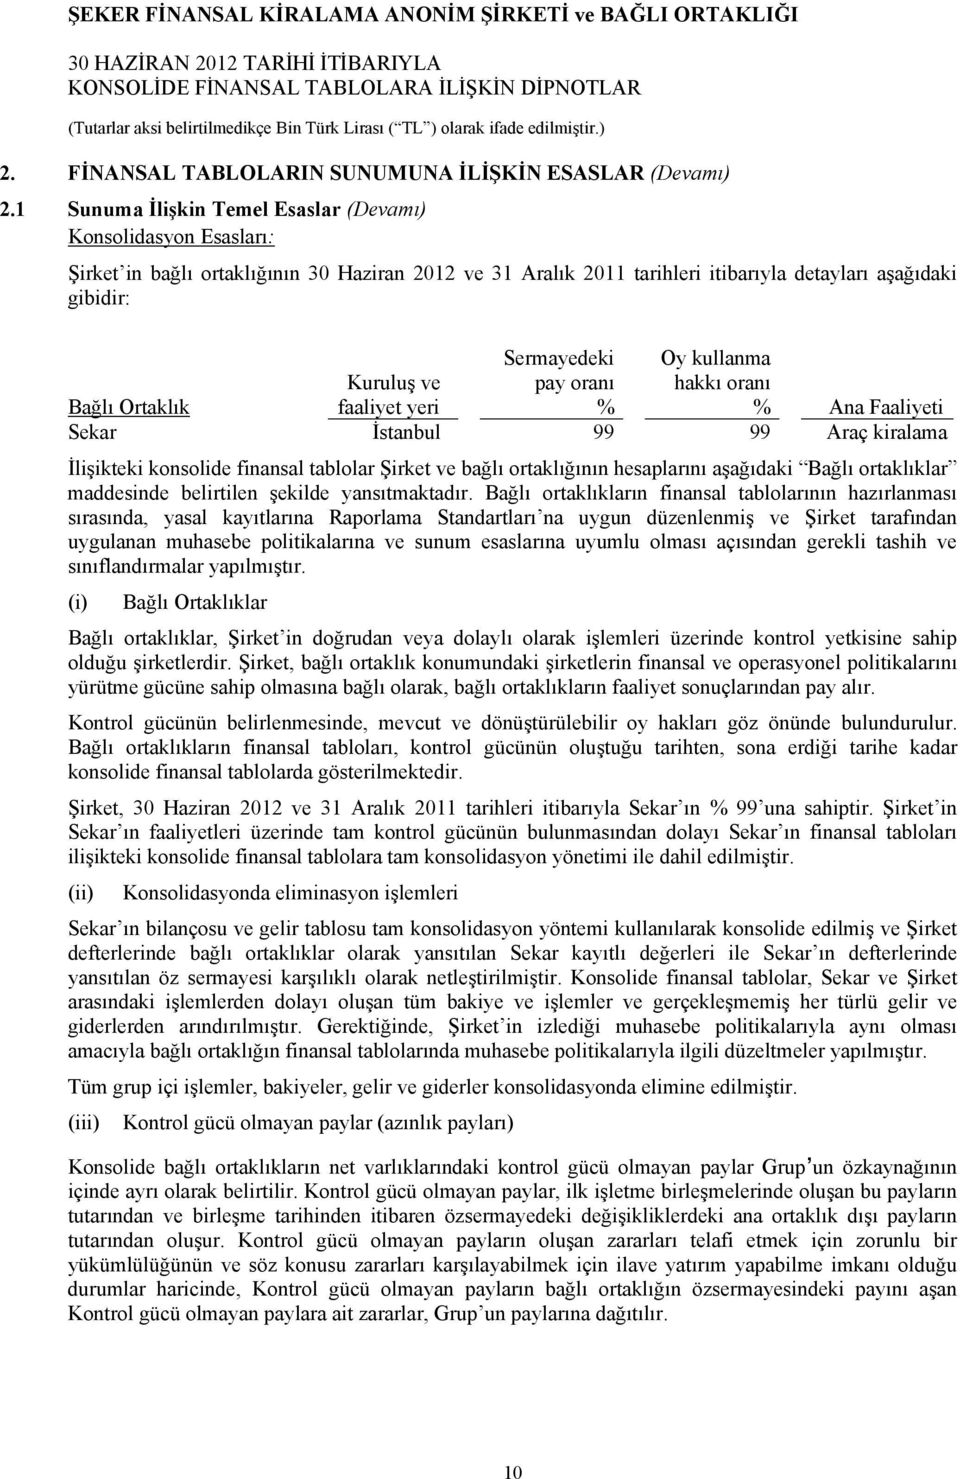 pay oranı Oy kullanma hakkı oranı Bağlı Ortaklık faaliyet yeri % % Ana Faaliyeti Sekar İstanbul 99 99 Araç kiralama İlişikteki konsolide finansal tablolar Şirket ve bağlı ortaklığının hesaplarını